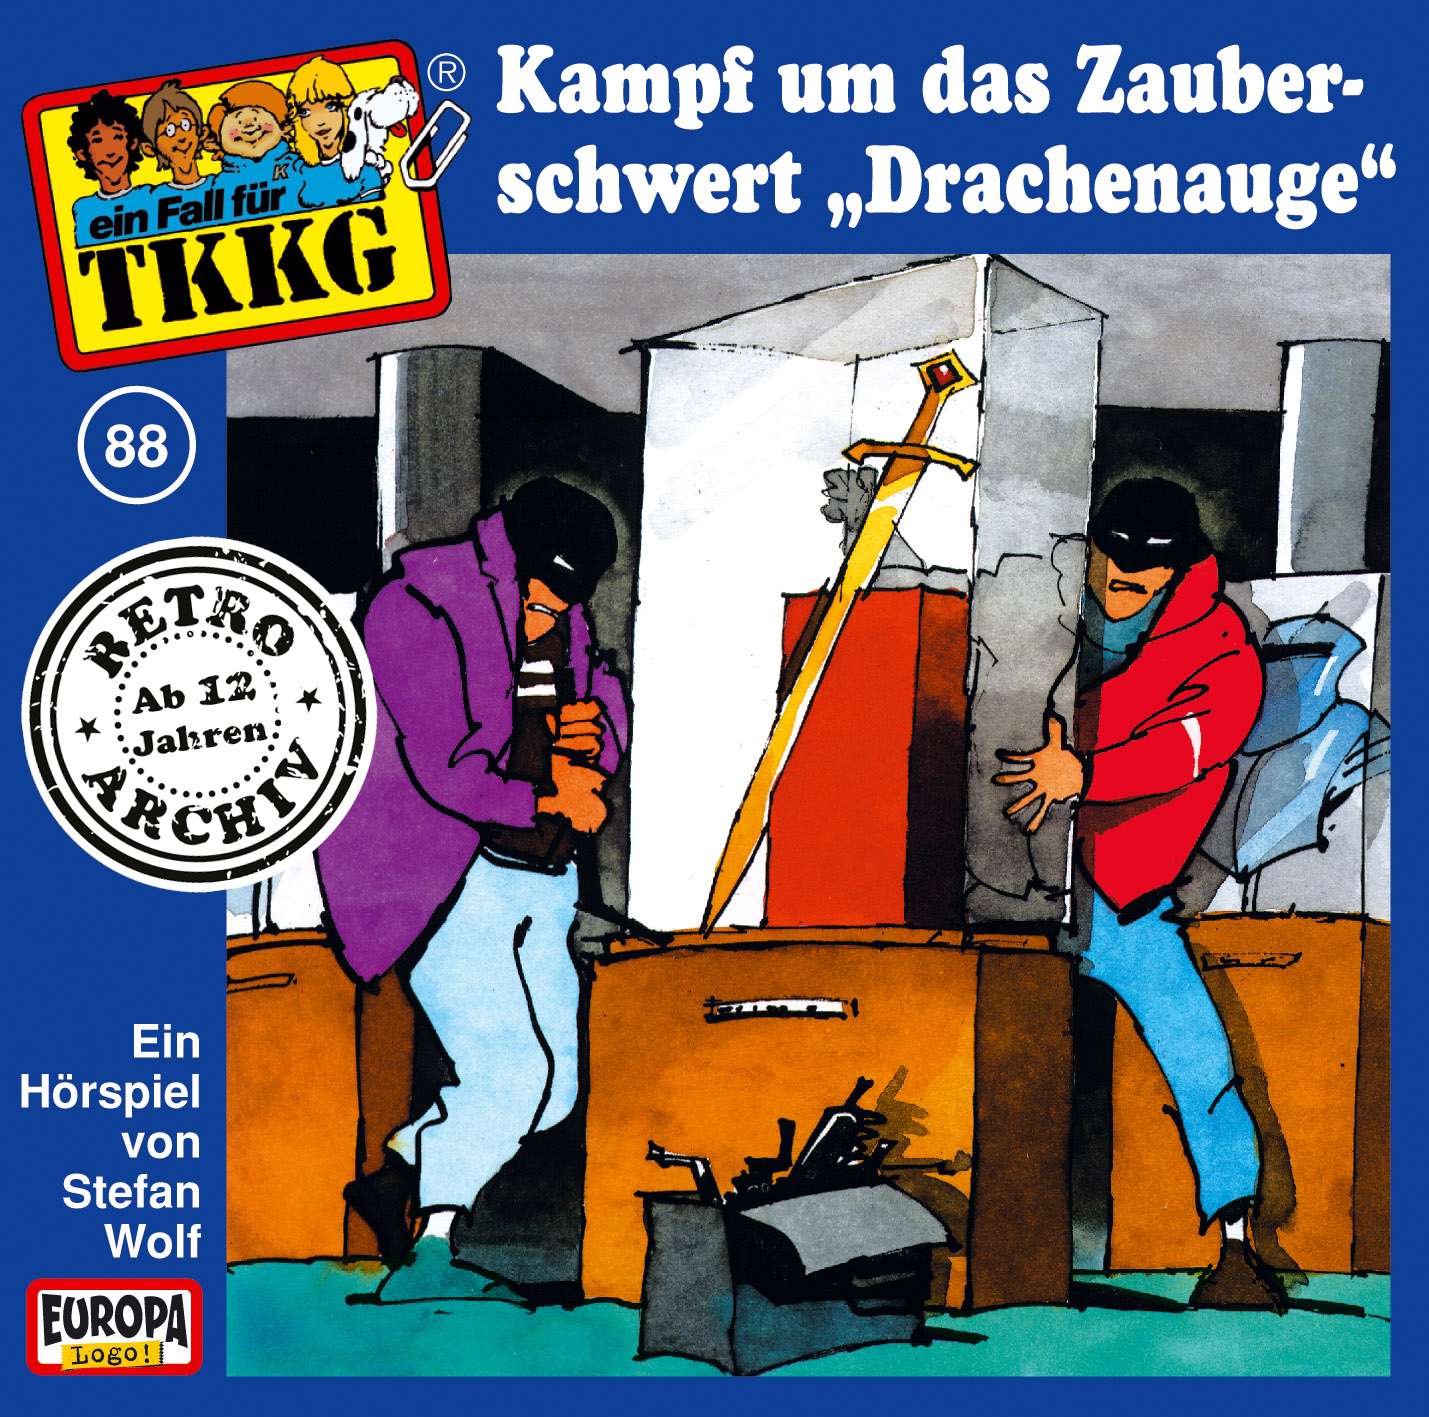 TKKG Retro-Archiv: Der Kampf um das Zauberschwert